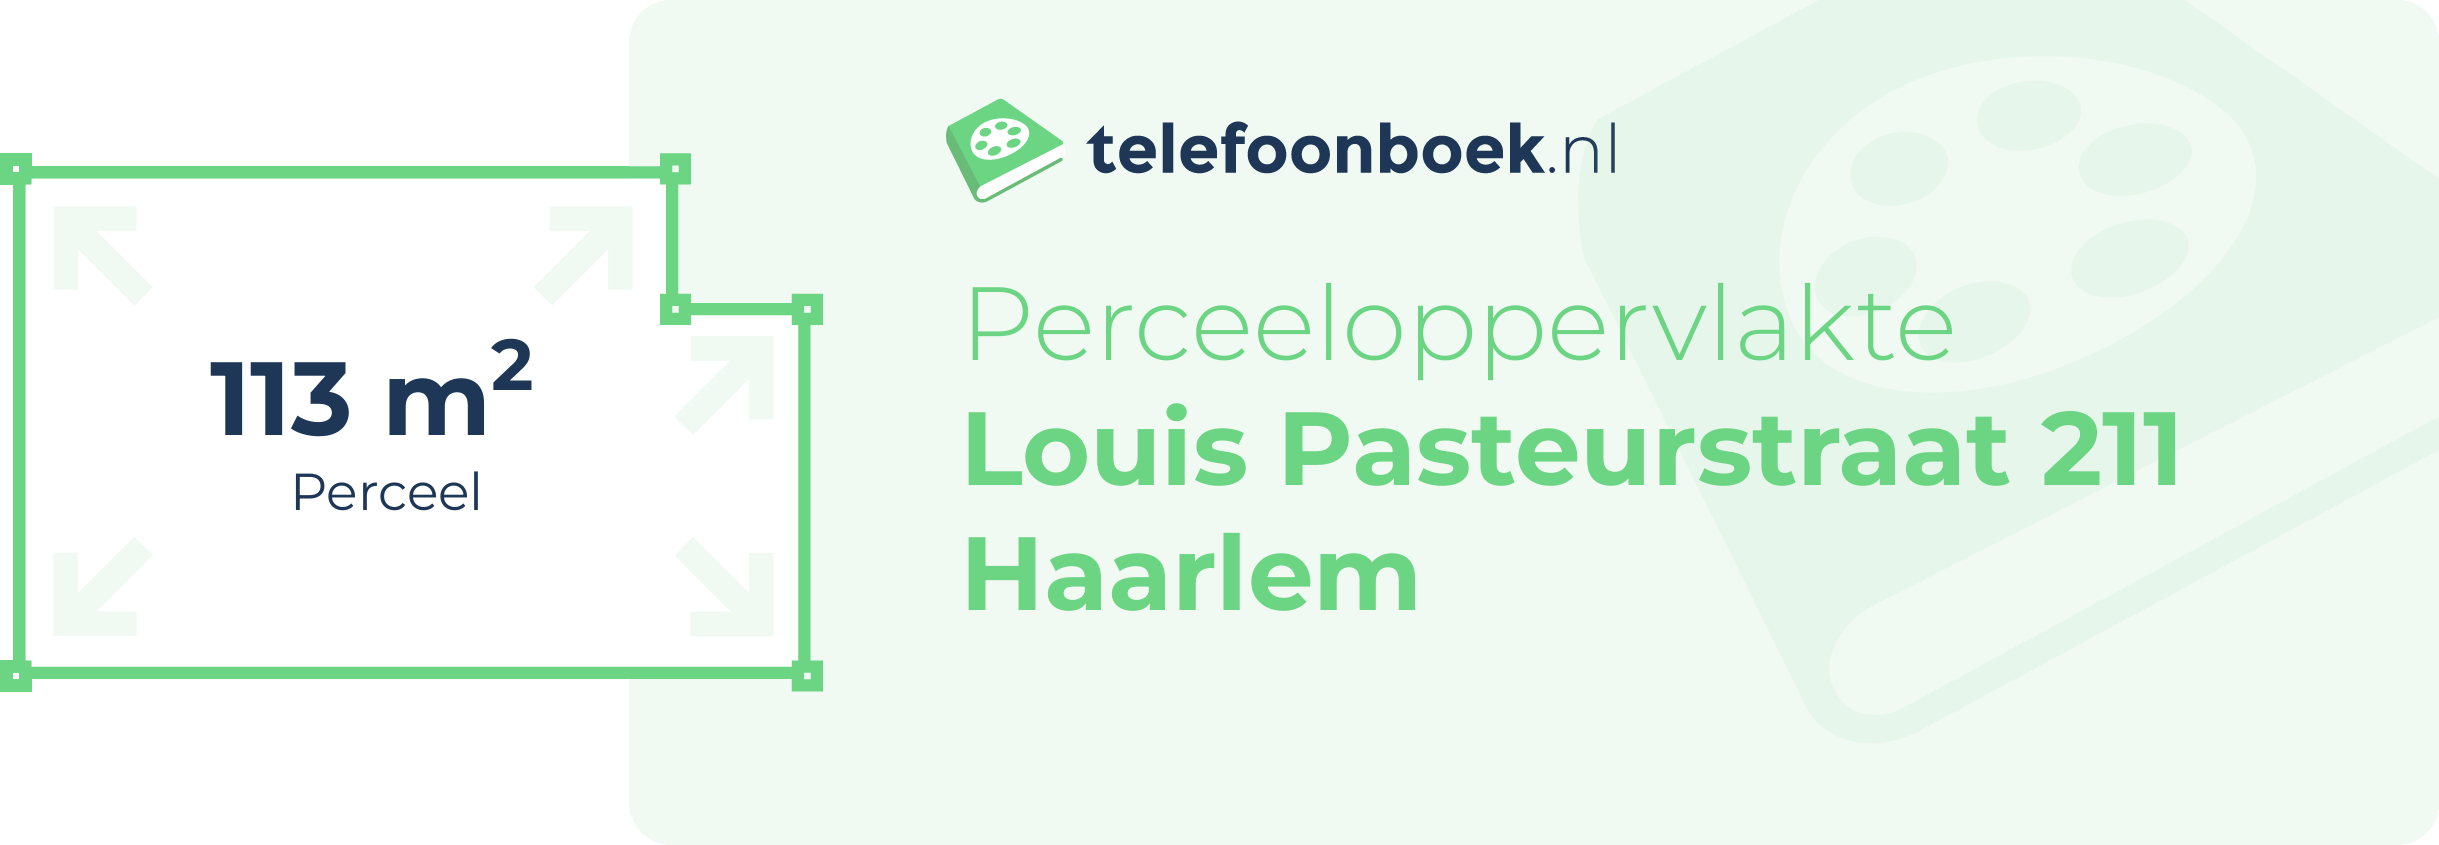 Perceeloppervlakte Louis Pasteurstraat 211 Haarlem